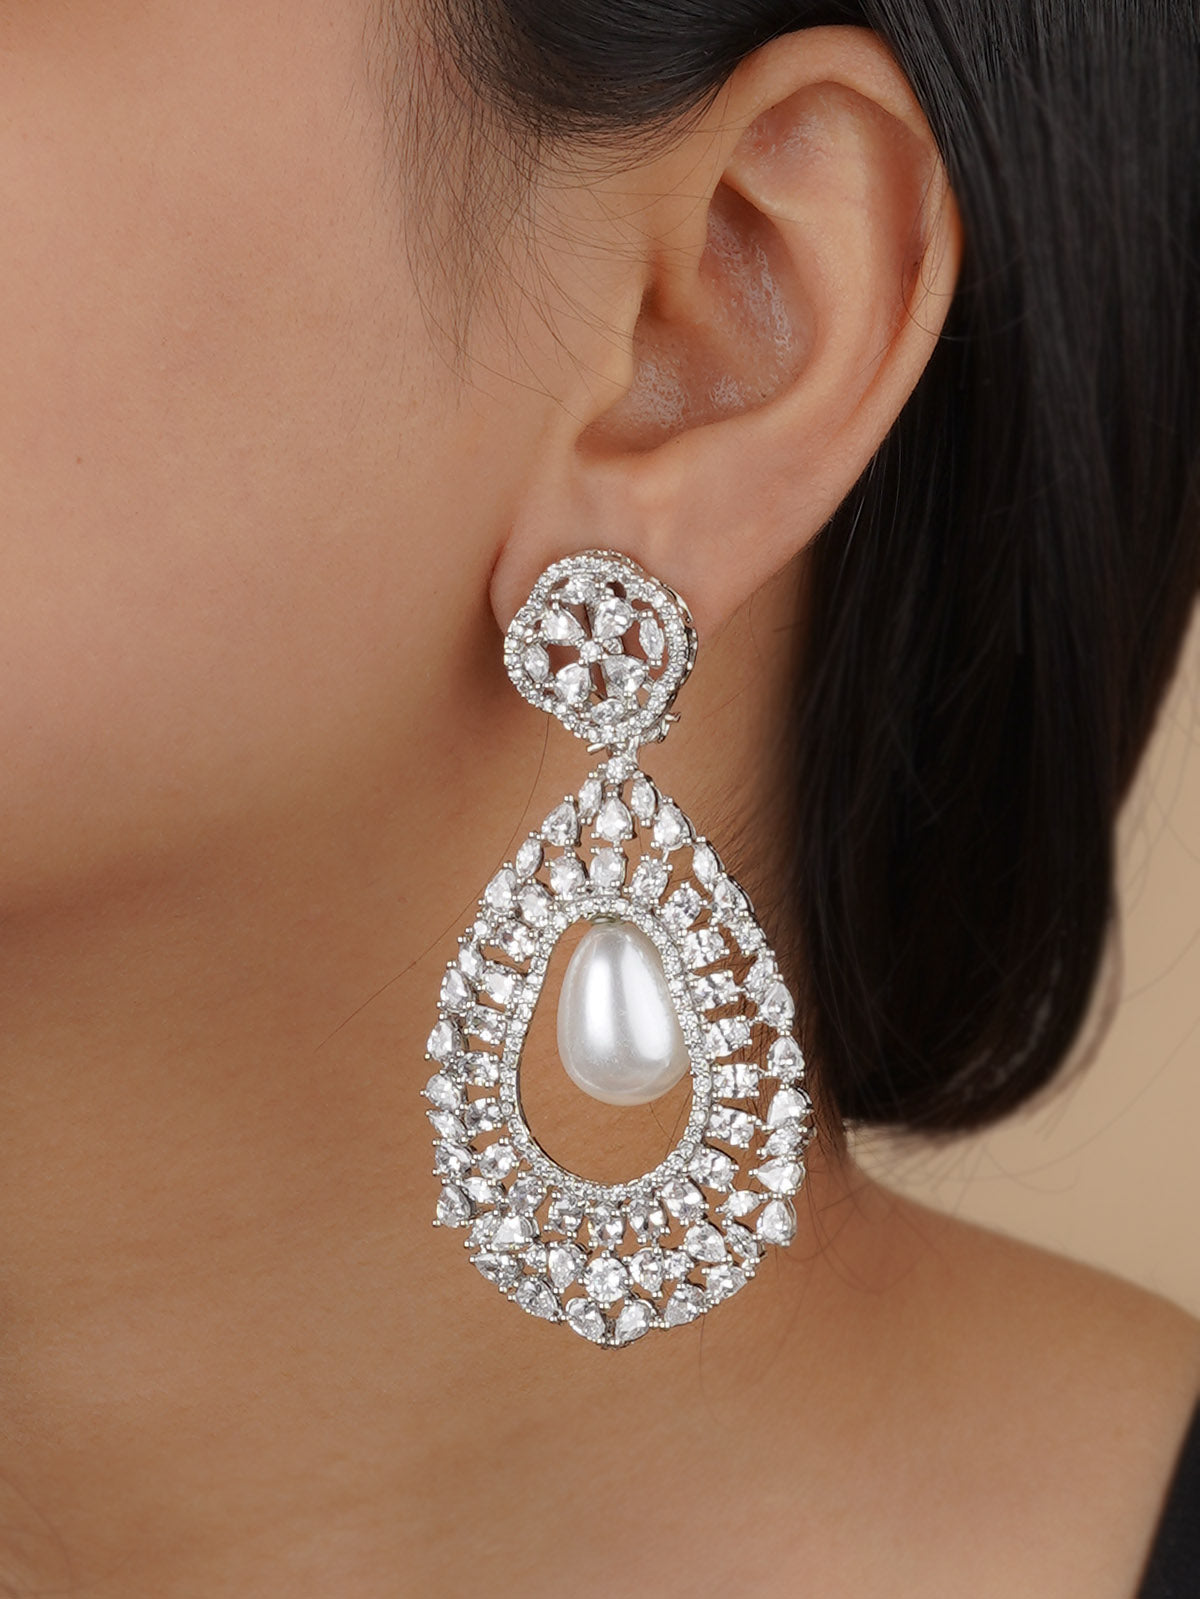 CZEAR532 - Silver Plated Faux Diamond Earrings